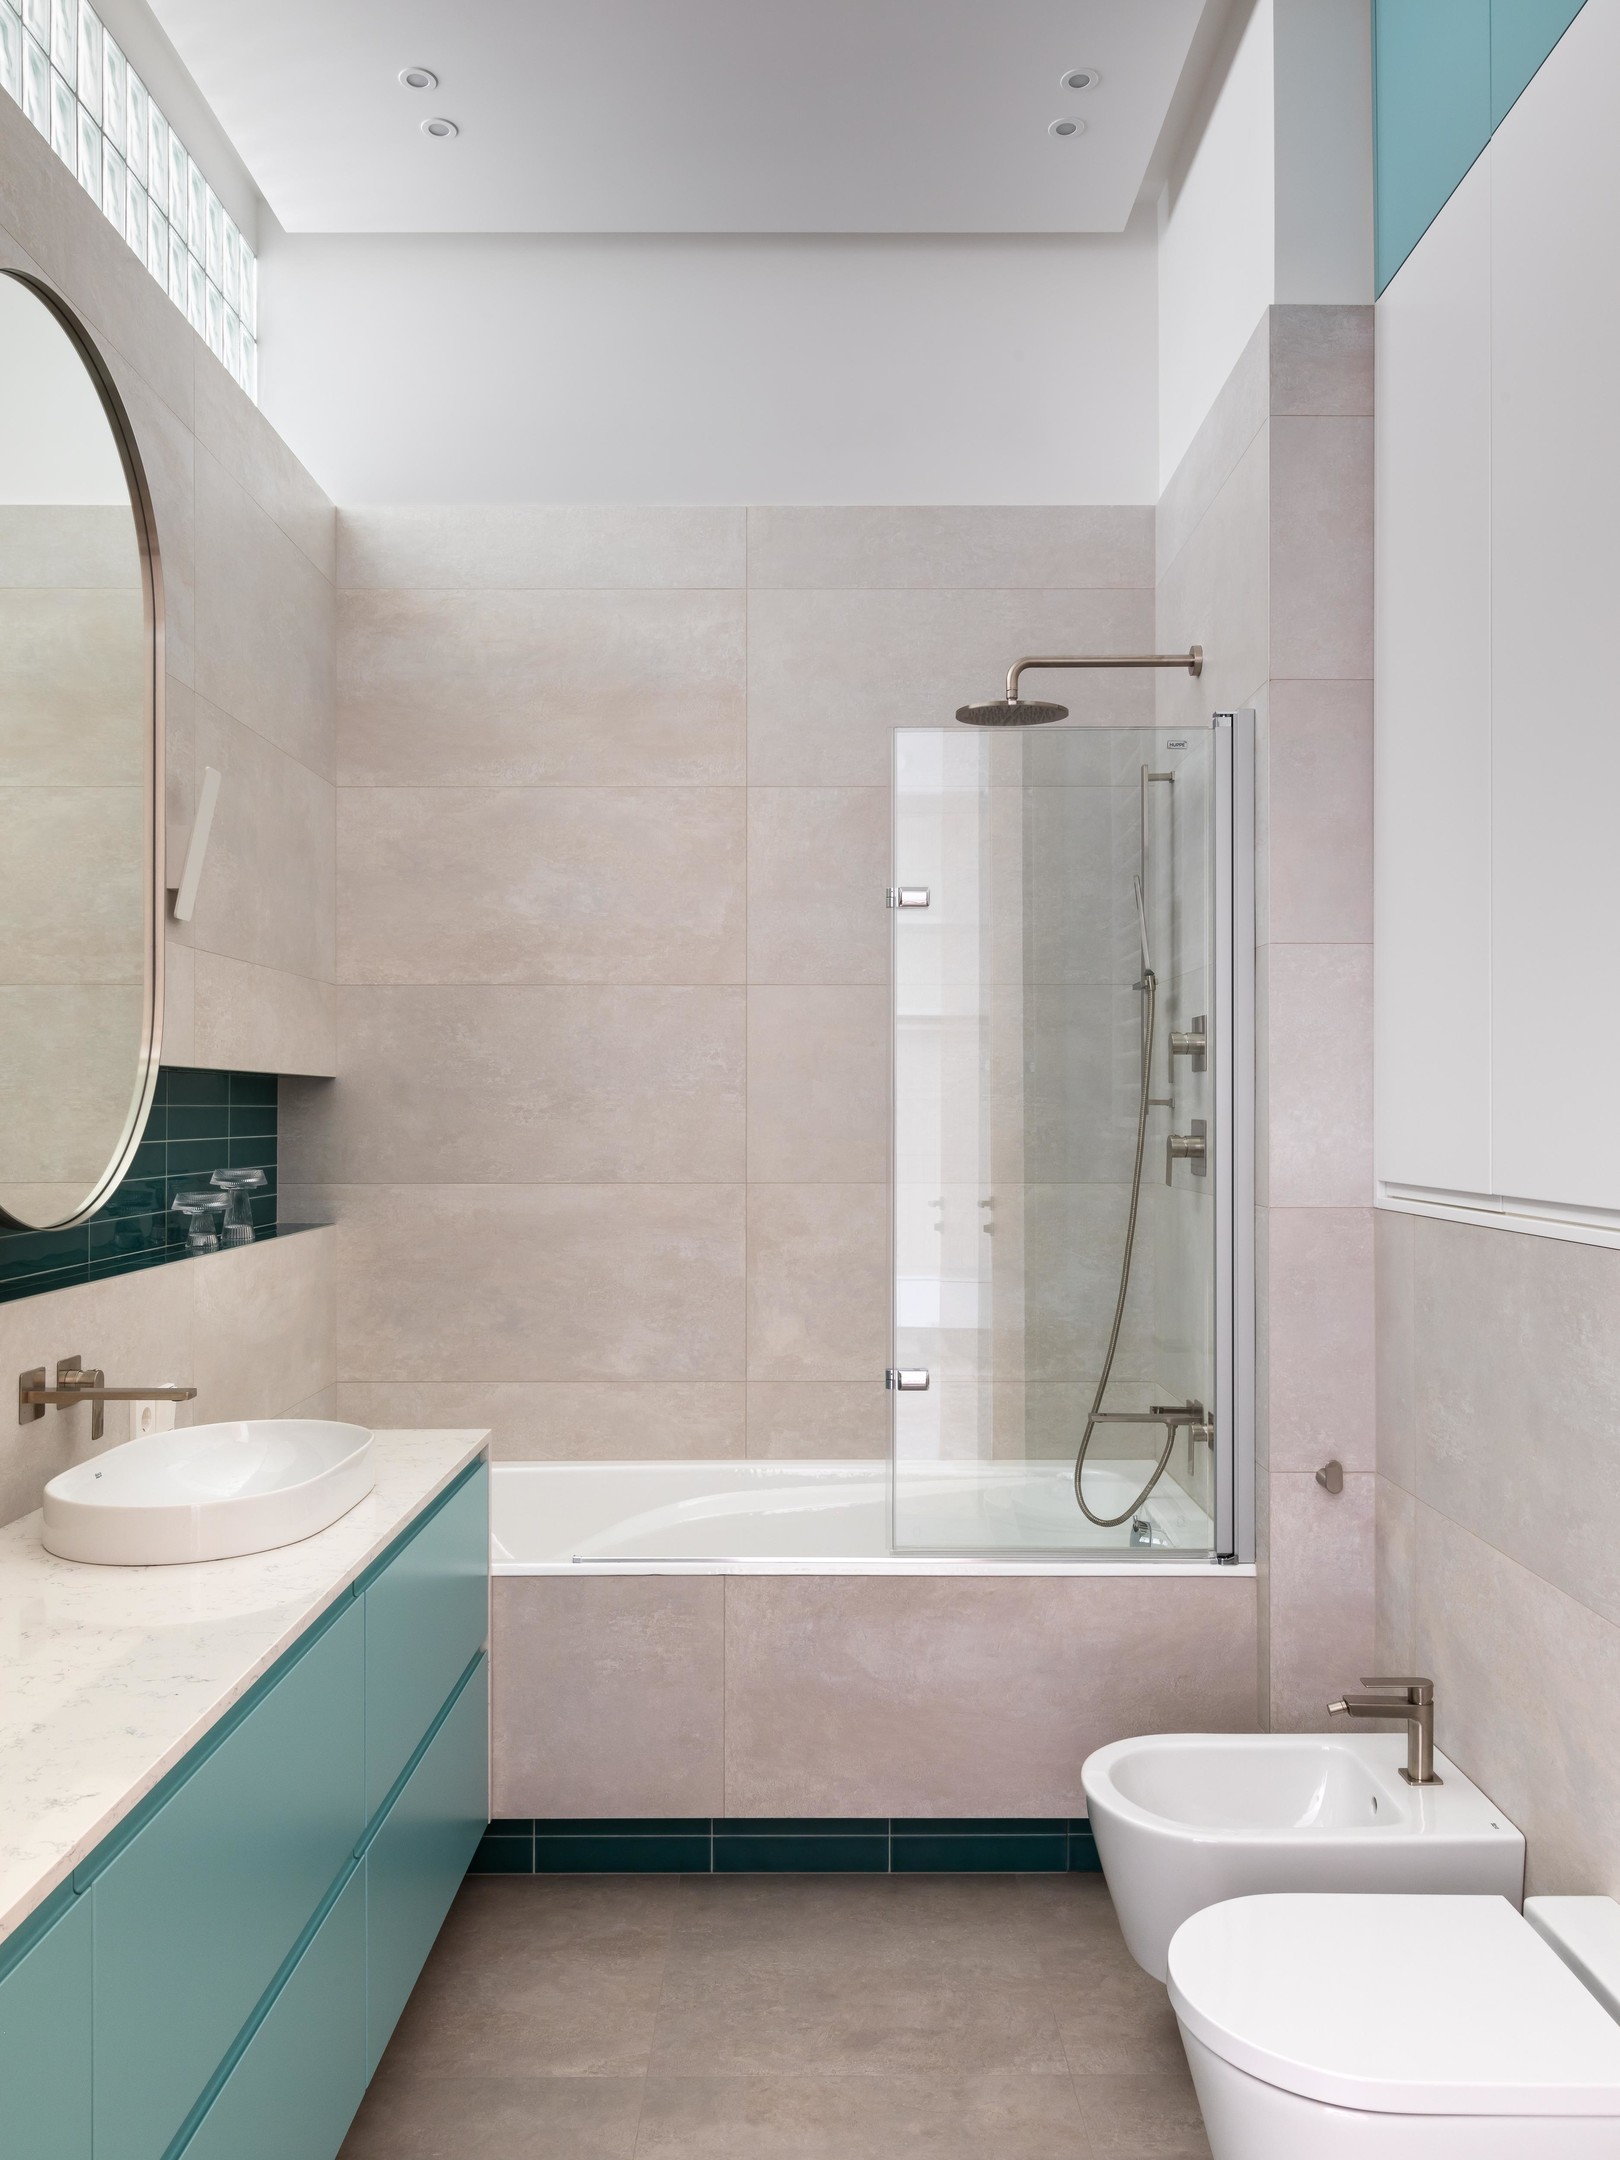 Phòng tắm thứ hai ngọt ngào, tươi sáng với các gam màu hồng phấn, xanh lam và xanh ngọc lục bảo nổi bật trên nền trắng. Bồn tắm nằm sử dụng vách ngăn kính trong suốt để phân vùng với nhà vệ sinh.